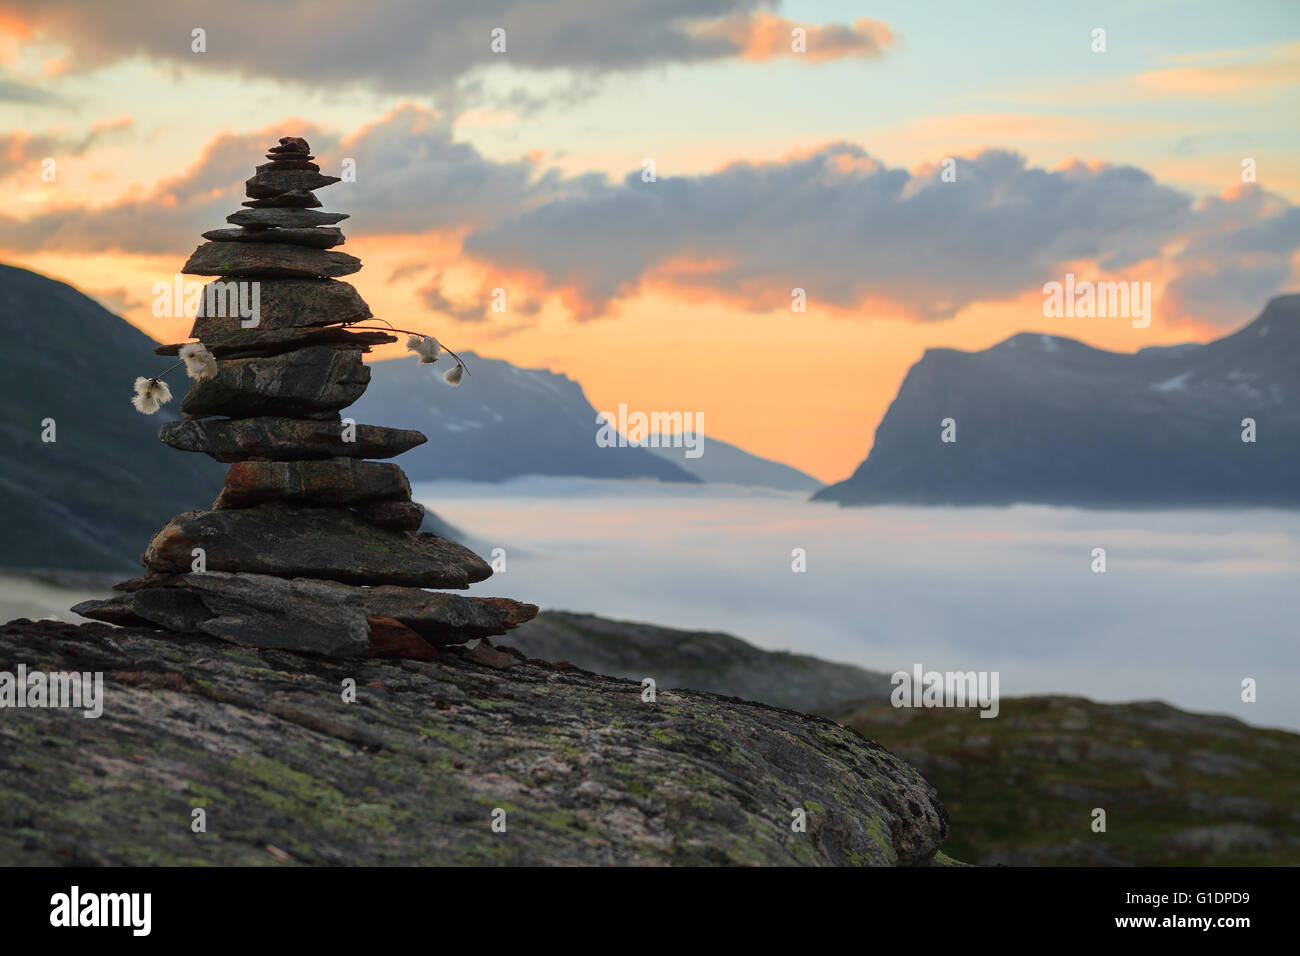 Stack rockt balancieren oder Felsen übereinander bei Sonnenuntergang im Tal der Trolle im Nebel auf dem Sunset in Trollstigen, Norwegen. Stockfoto